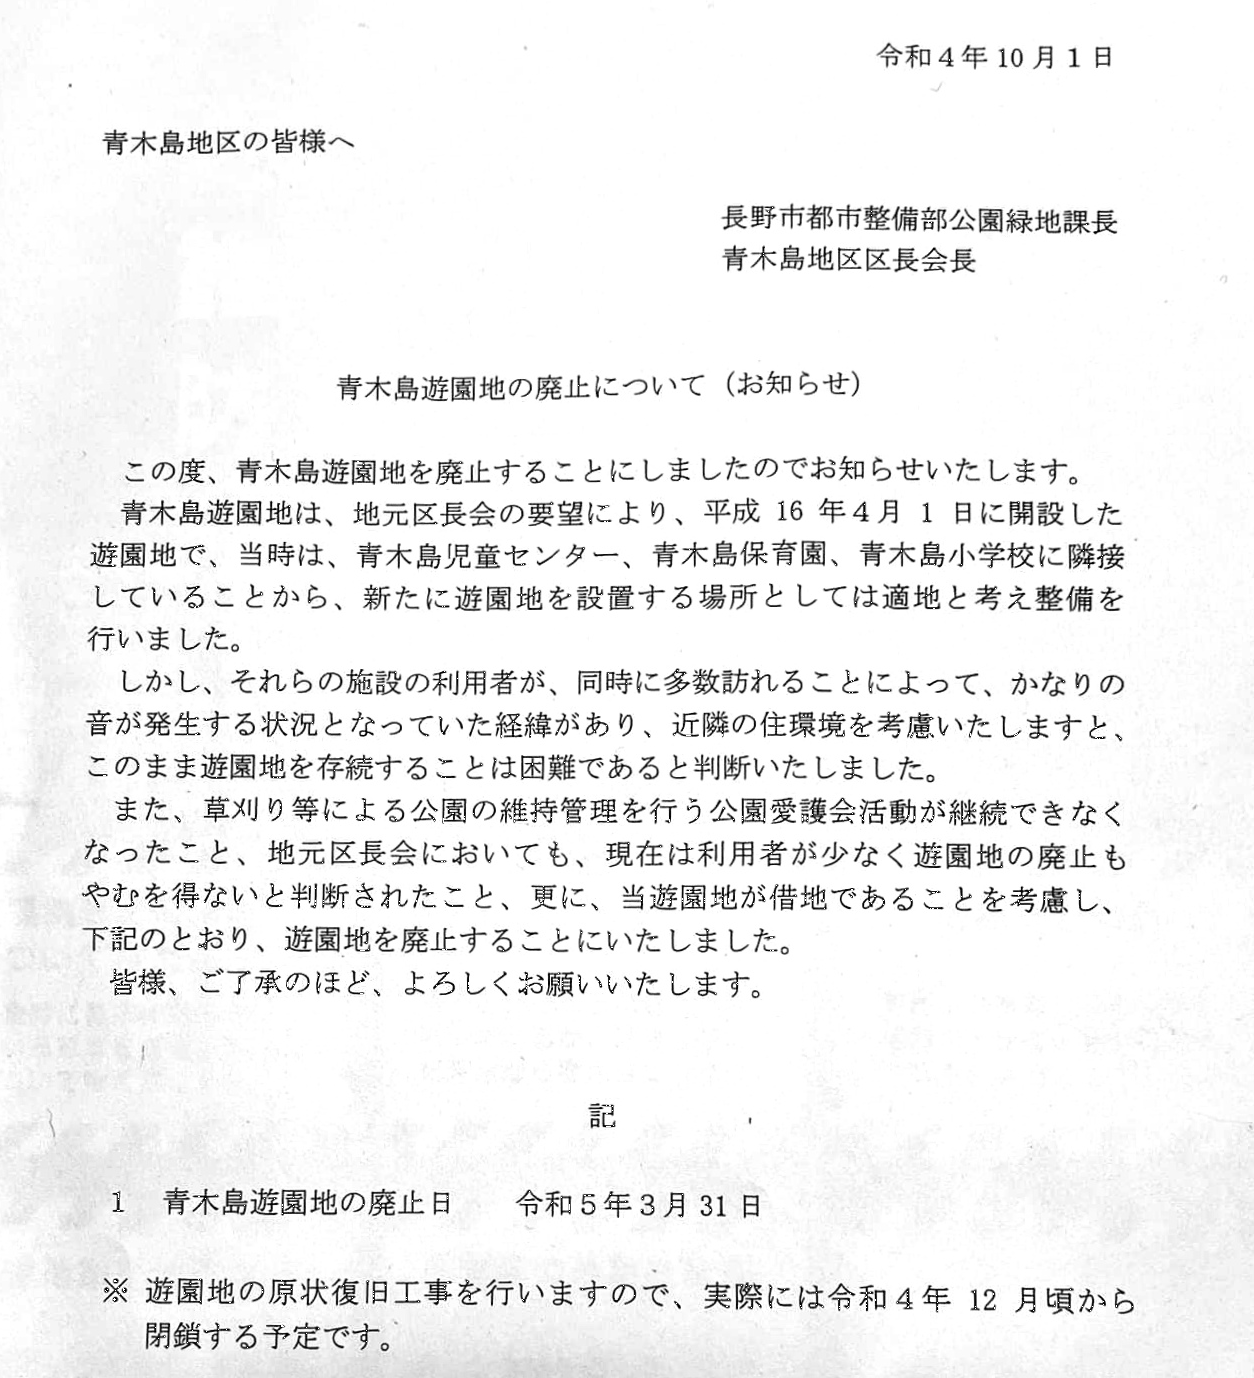 青木島遊園地の住民苦情クレームによる廃止の通知